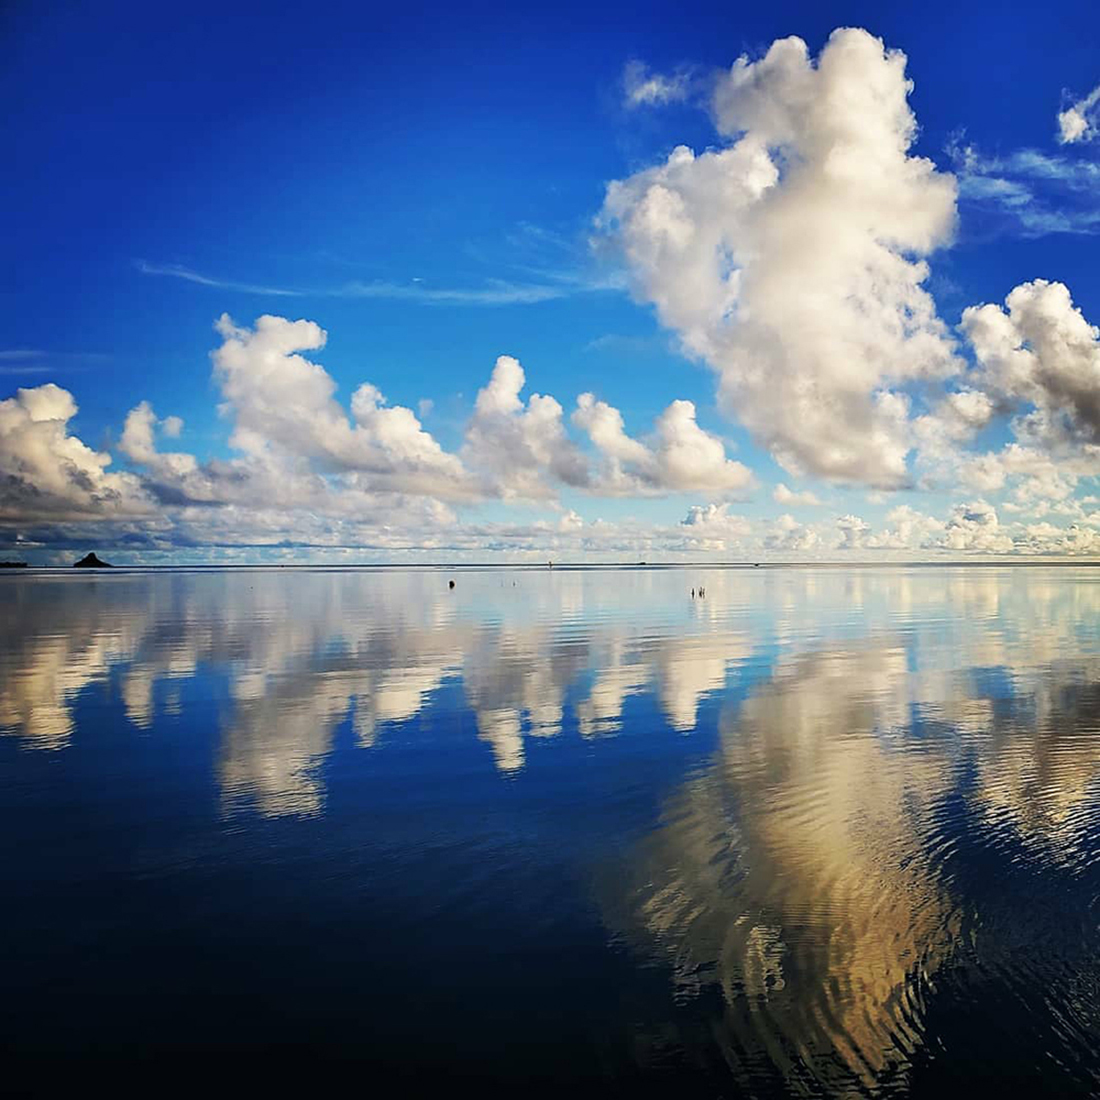 Mirrored - Kāneʻohe Bay